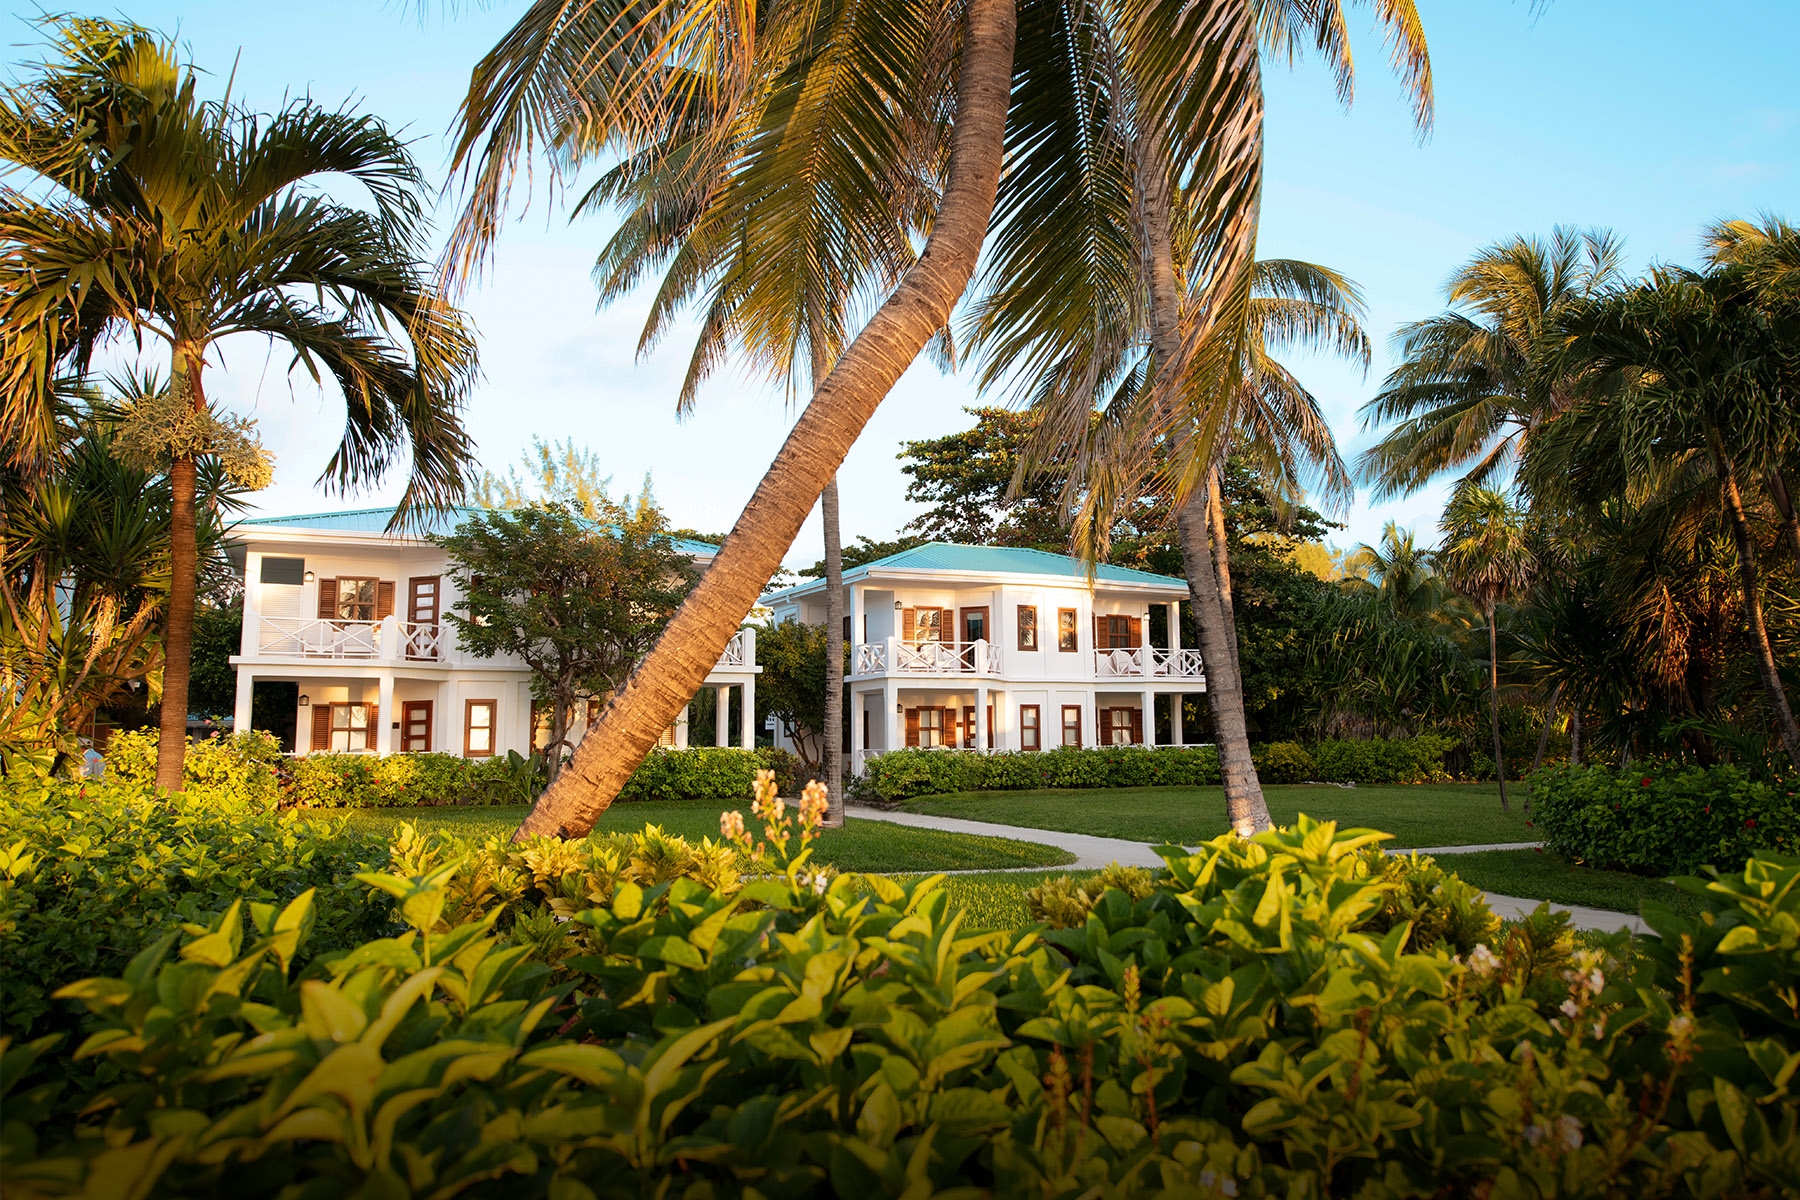 San Pedro, Belize Victoria House Resort & Spa colonial casitas